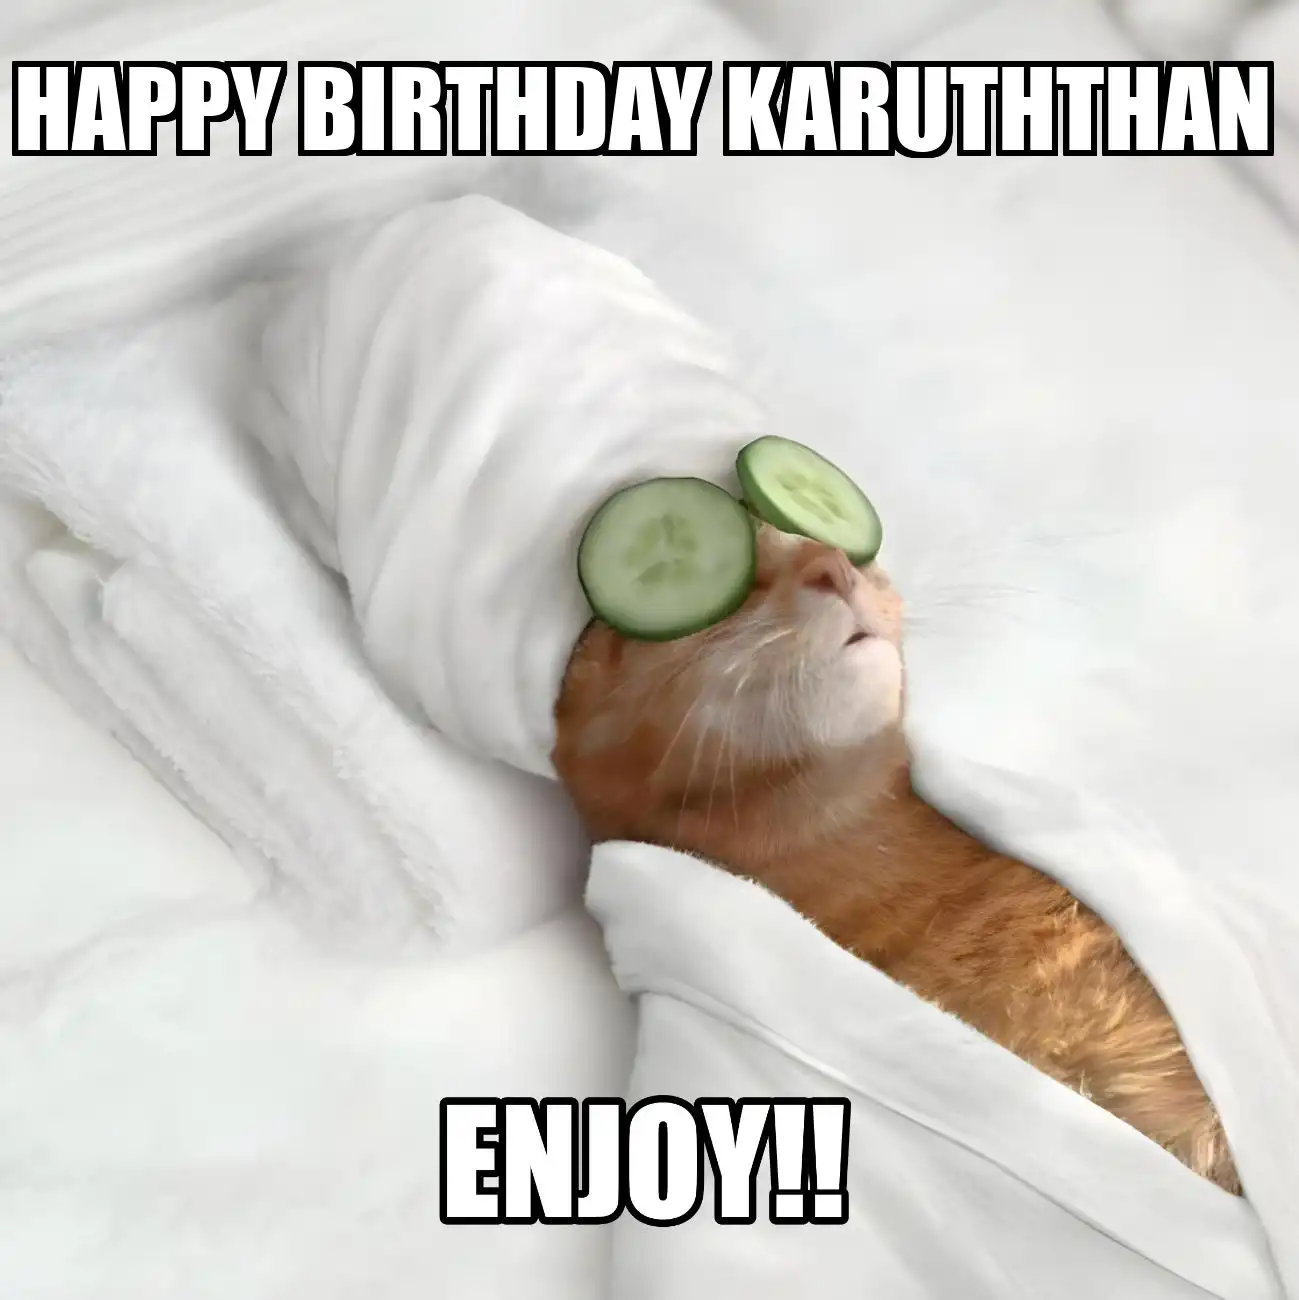 Happy Birthday Karuththan Enjoy Cat Meme